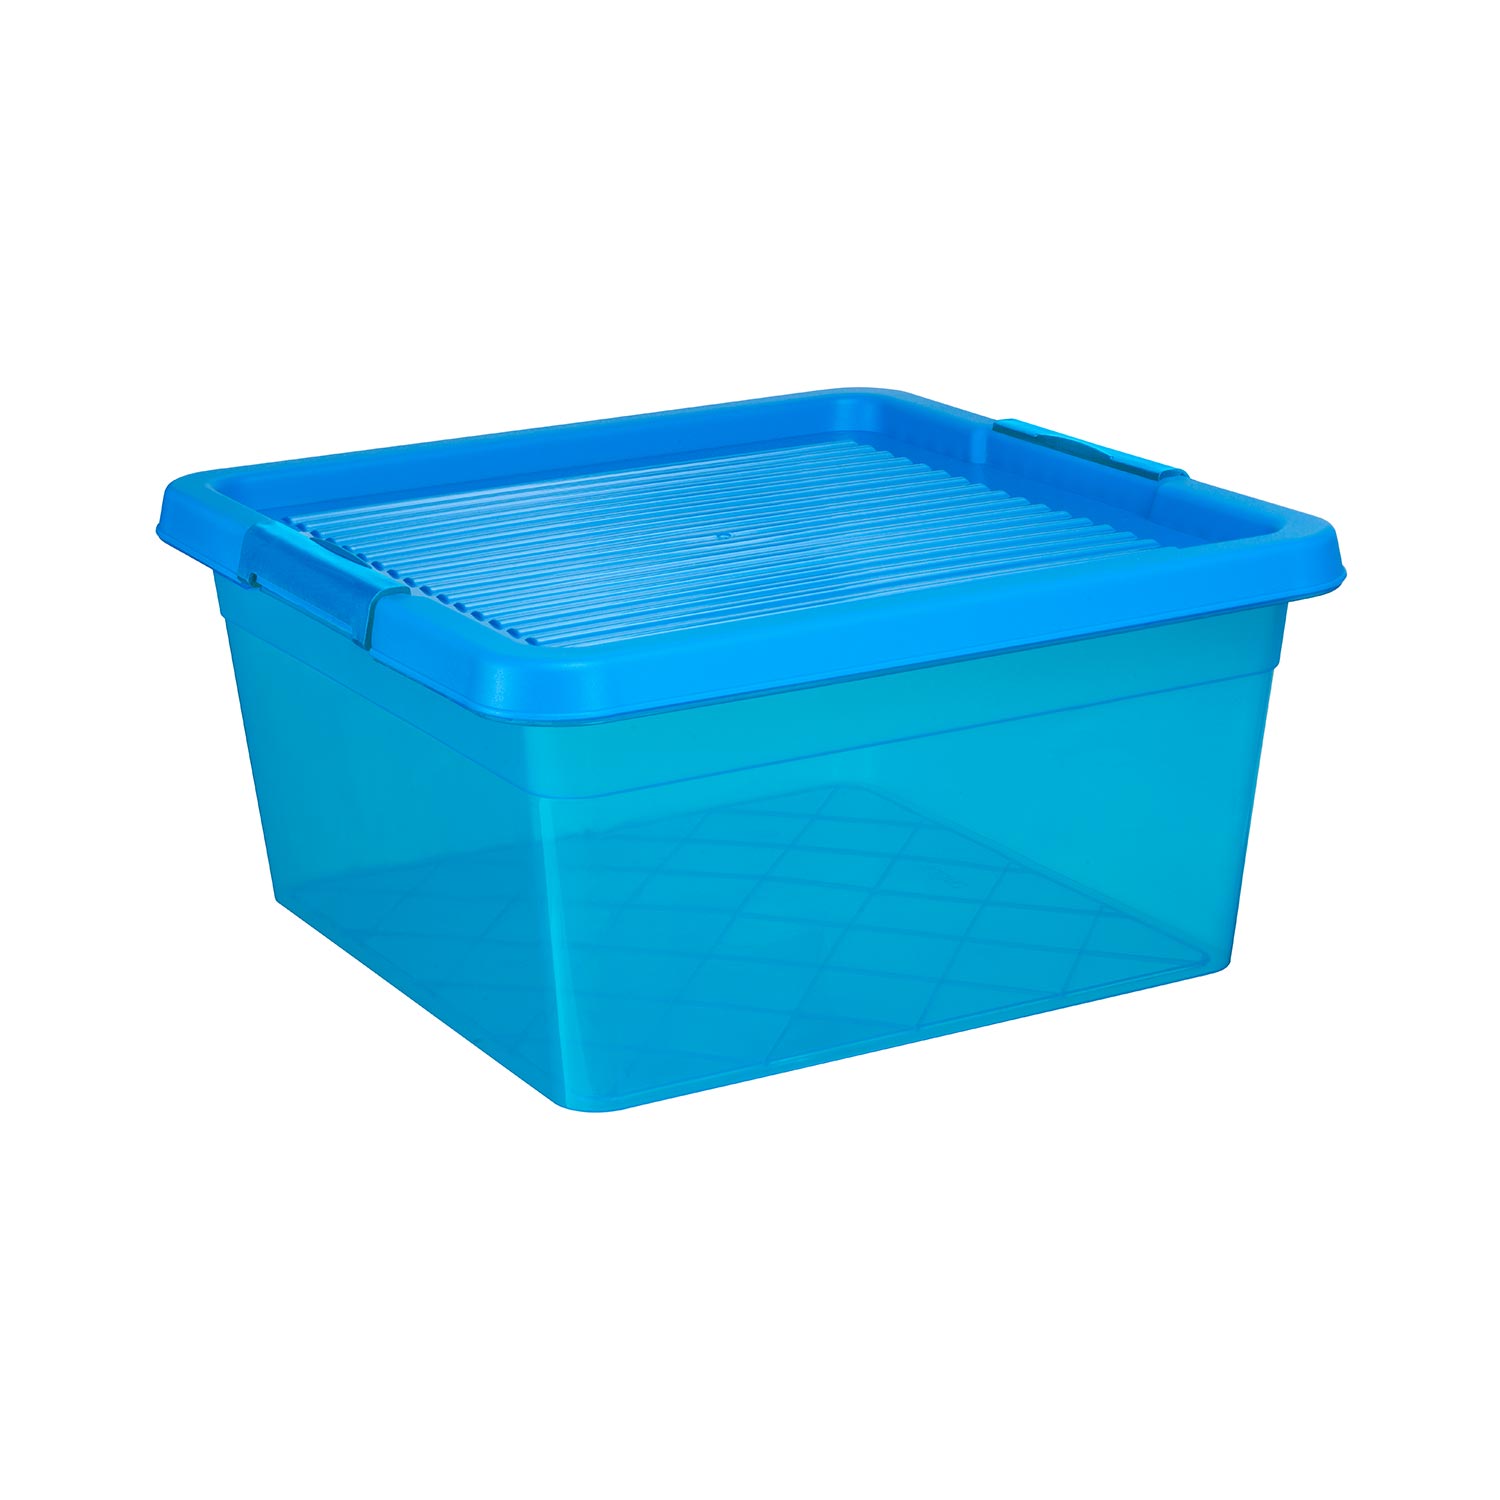 Aufbewahrungsbox "Box One" 20 L in transparenten blau, Kunststoffbox